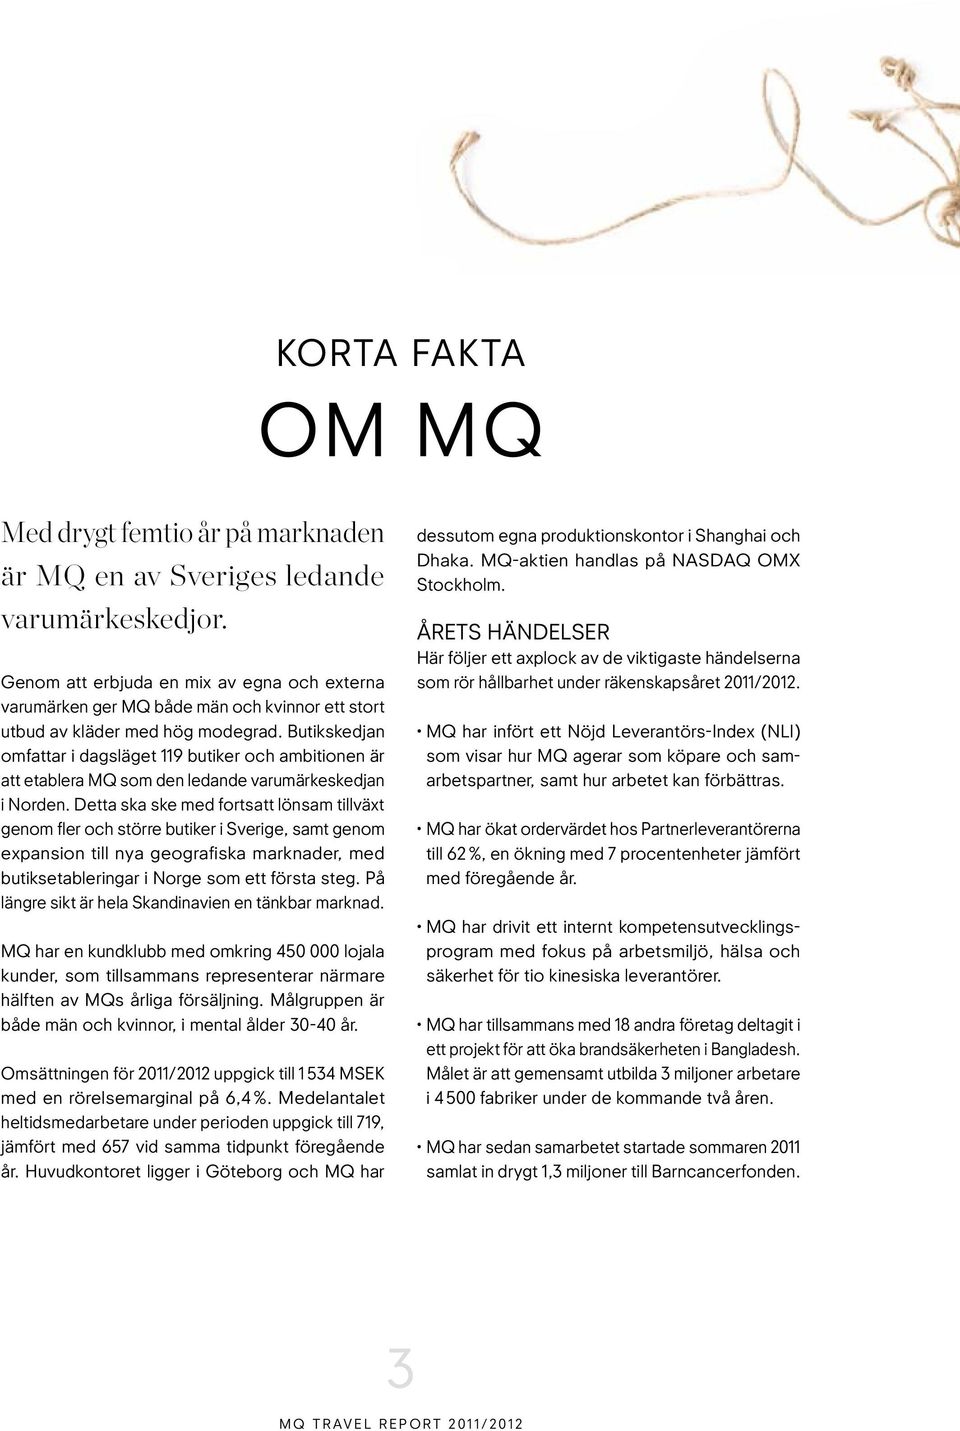 Butikskedjan omfattar i dagsläget 119 butiker och ambitionen är att etablera MQ som den ledande varumärkeskedjan i Norden.